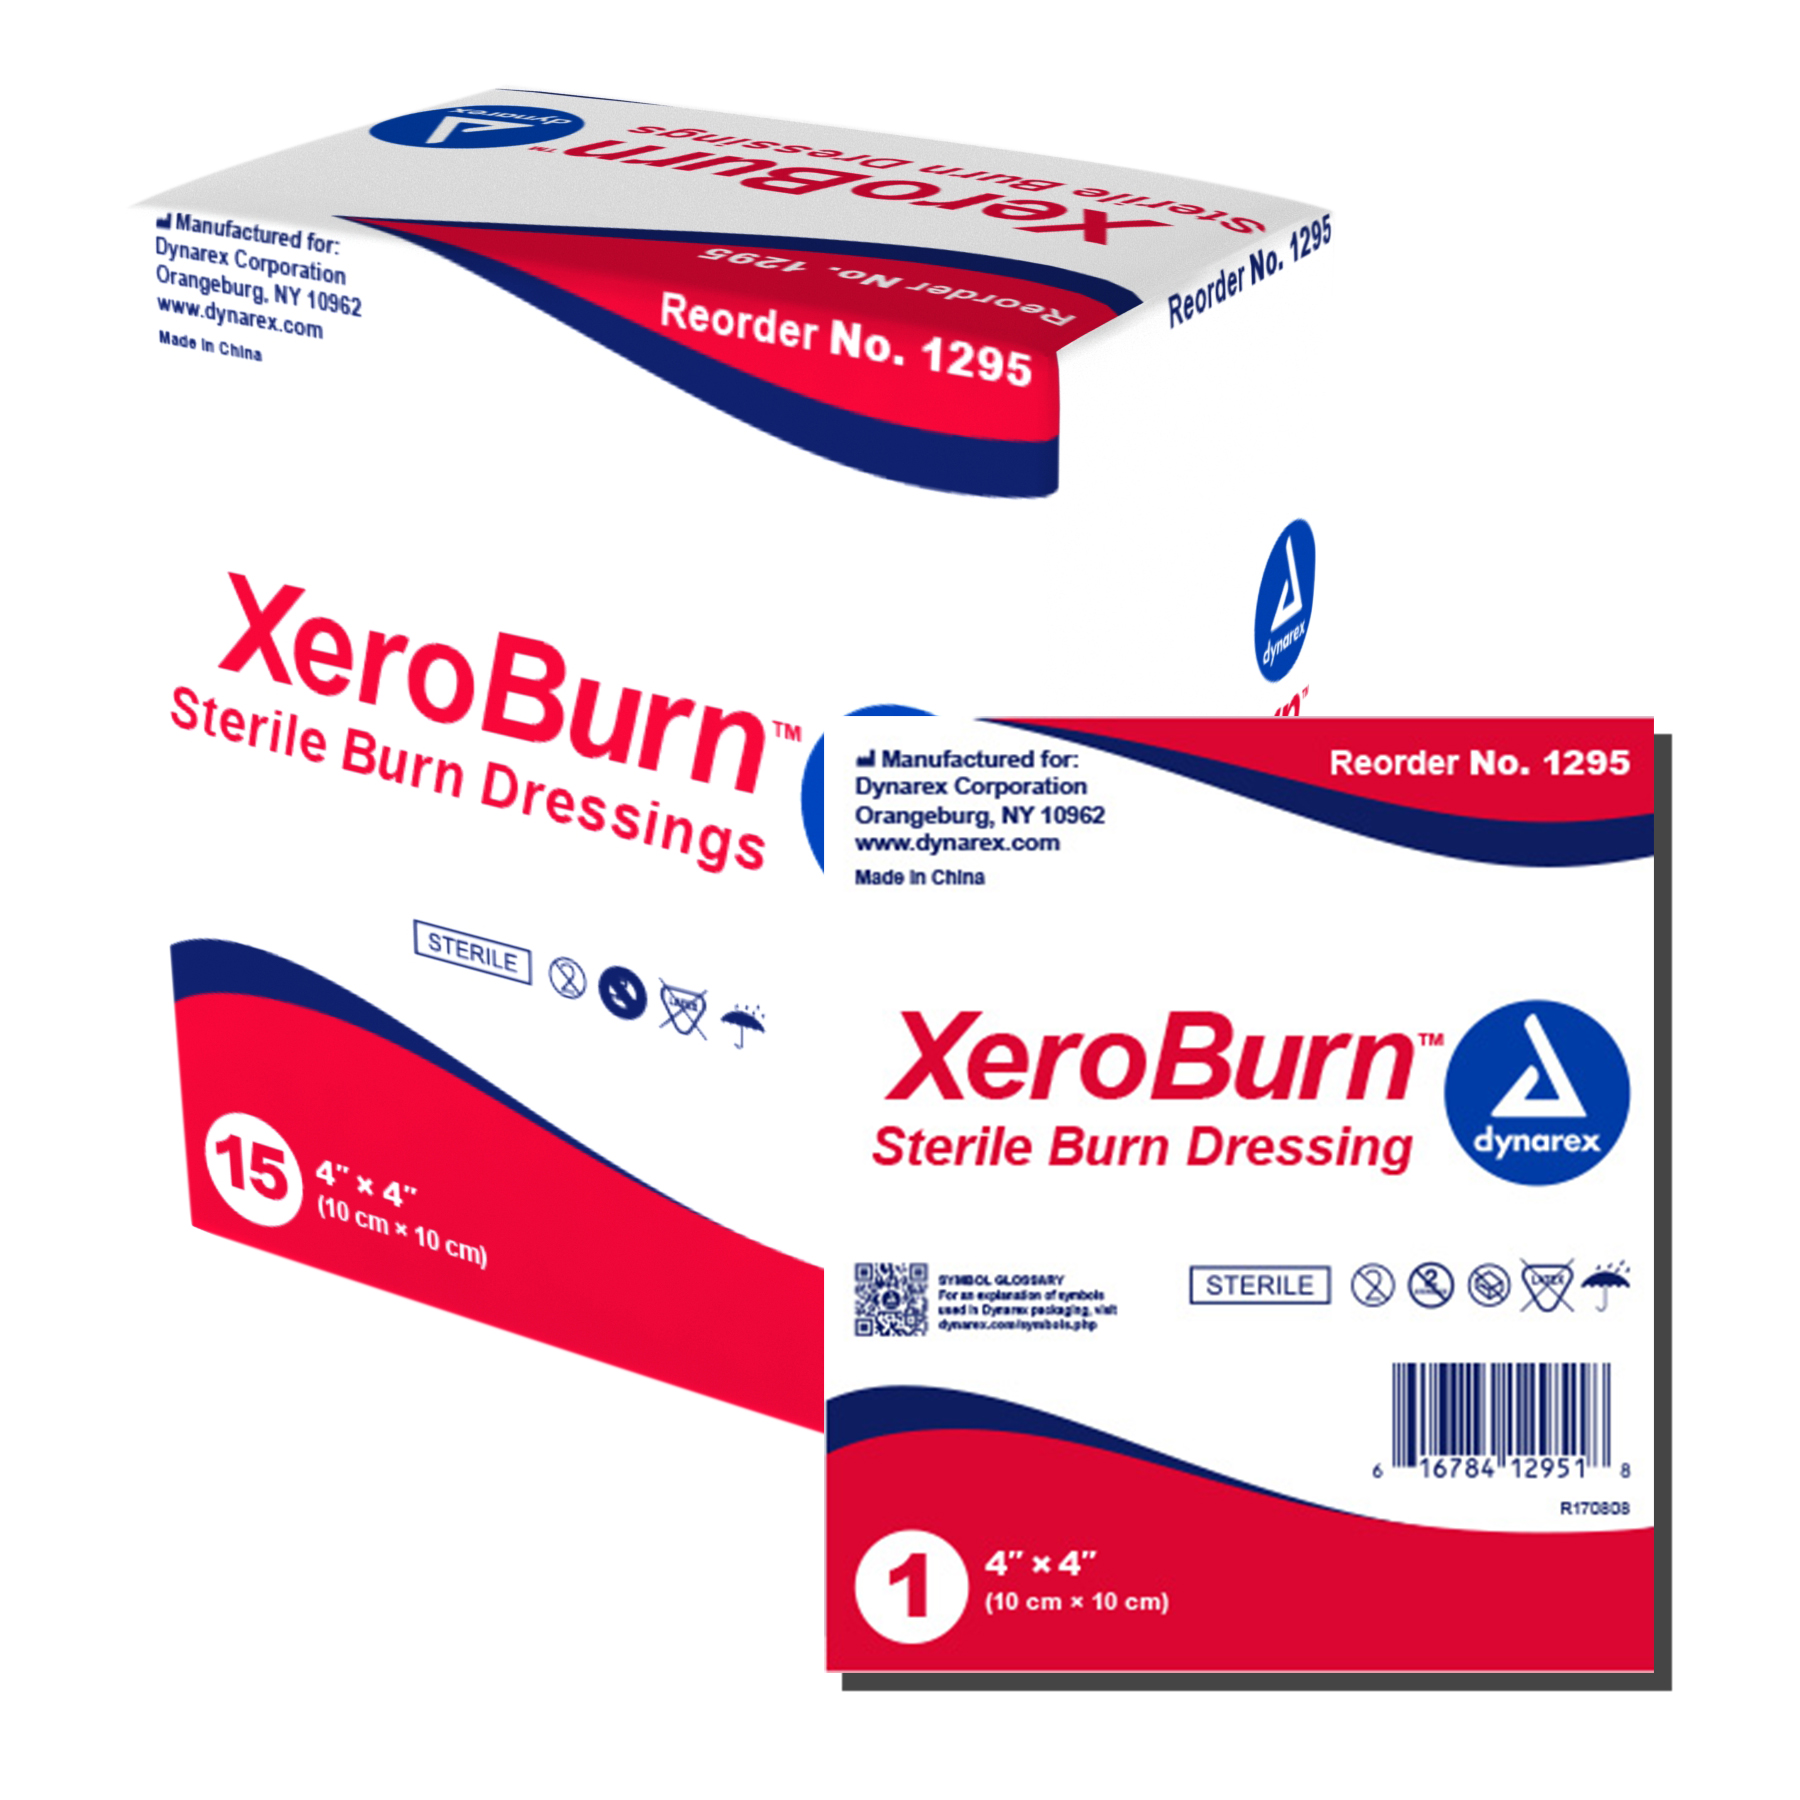 1295 Dynarex® XeroBurn Sterile Burn Dressing